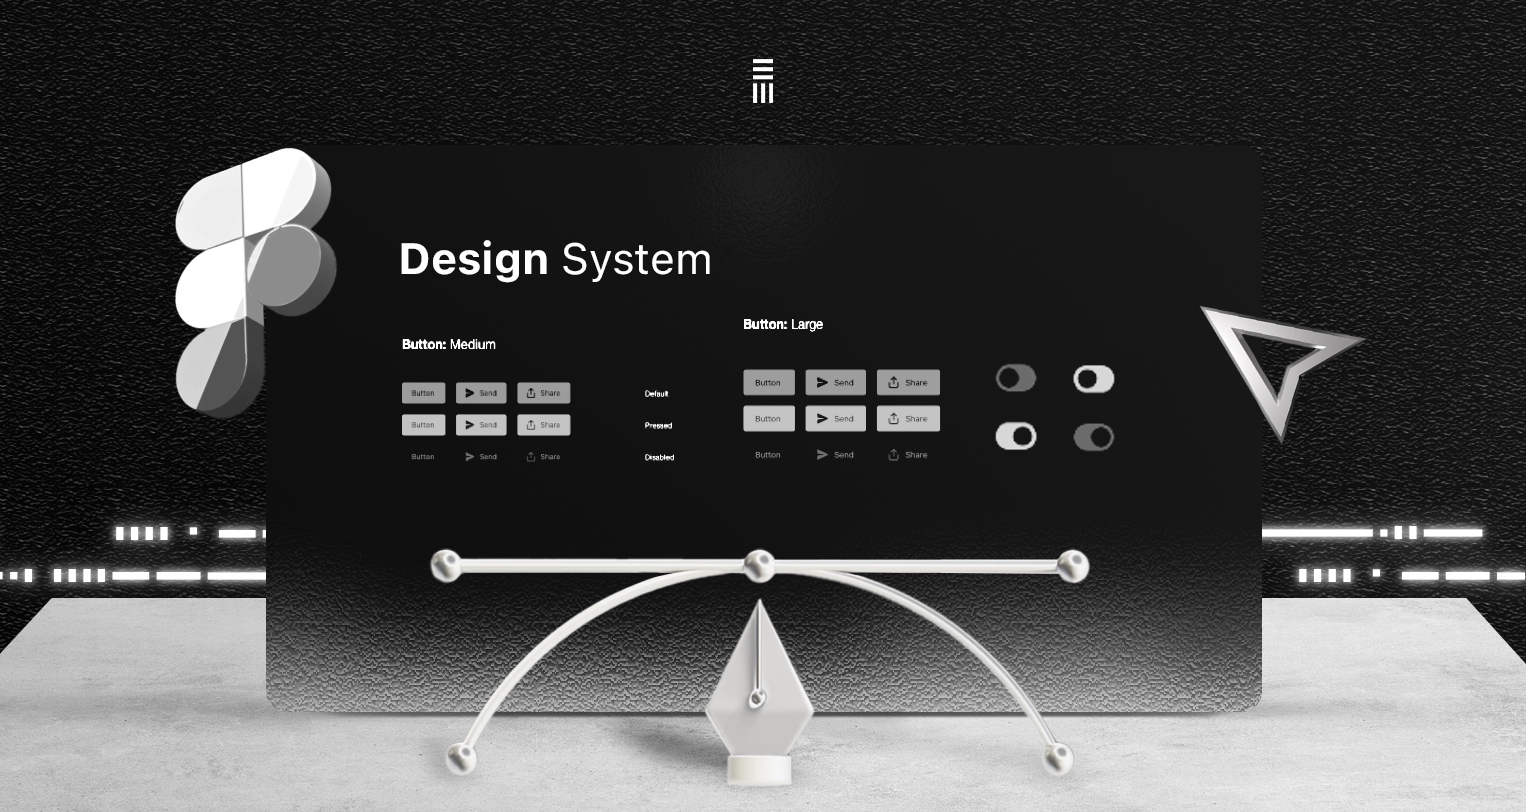 Qu’est-ce qu’un design system et pourquoi est-ce important